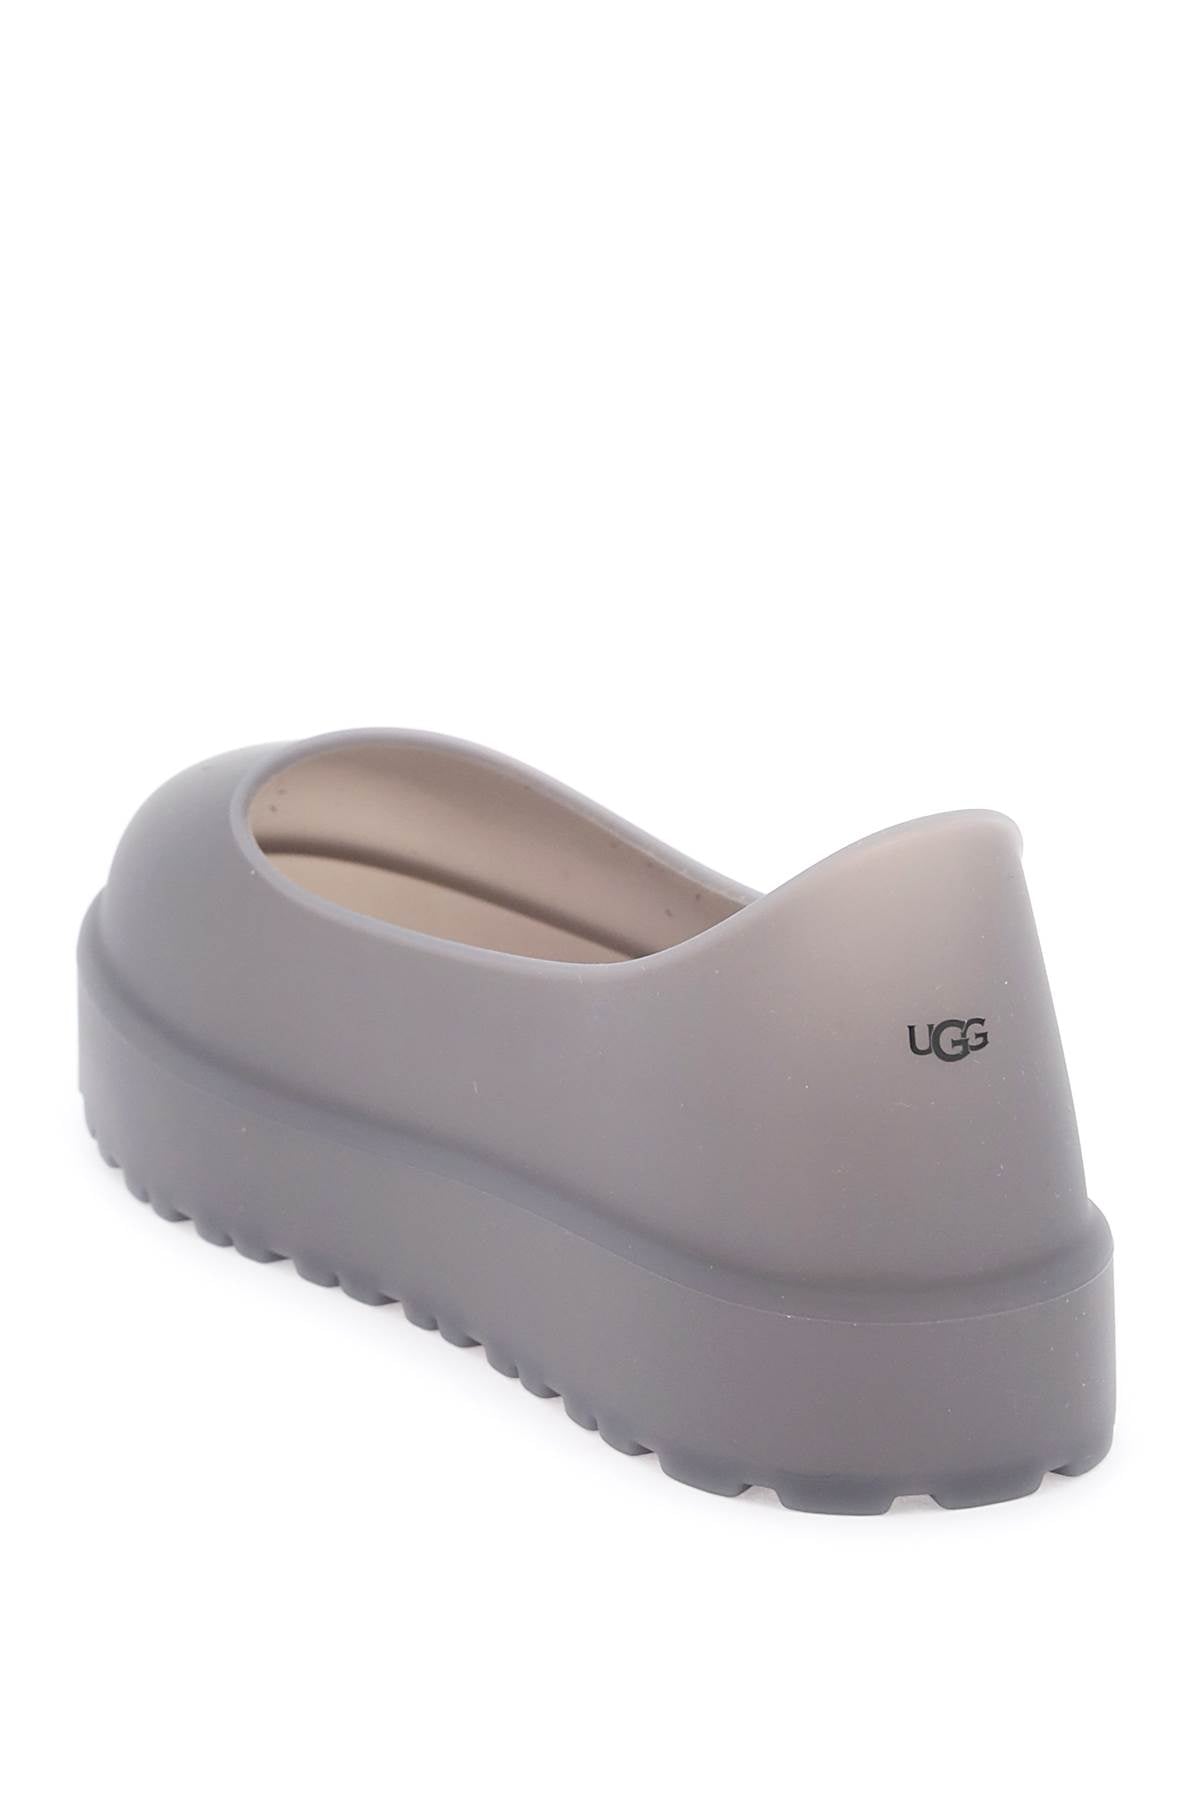 Ugg Ugg uggguard shoe protection